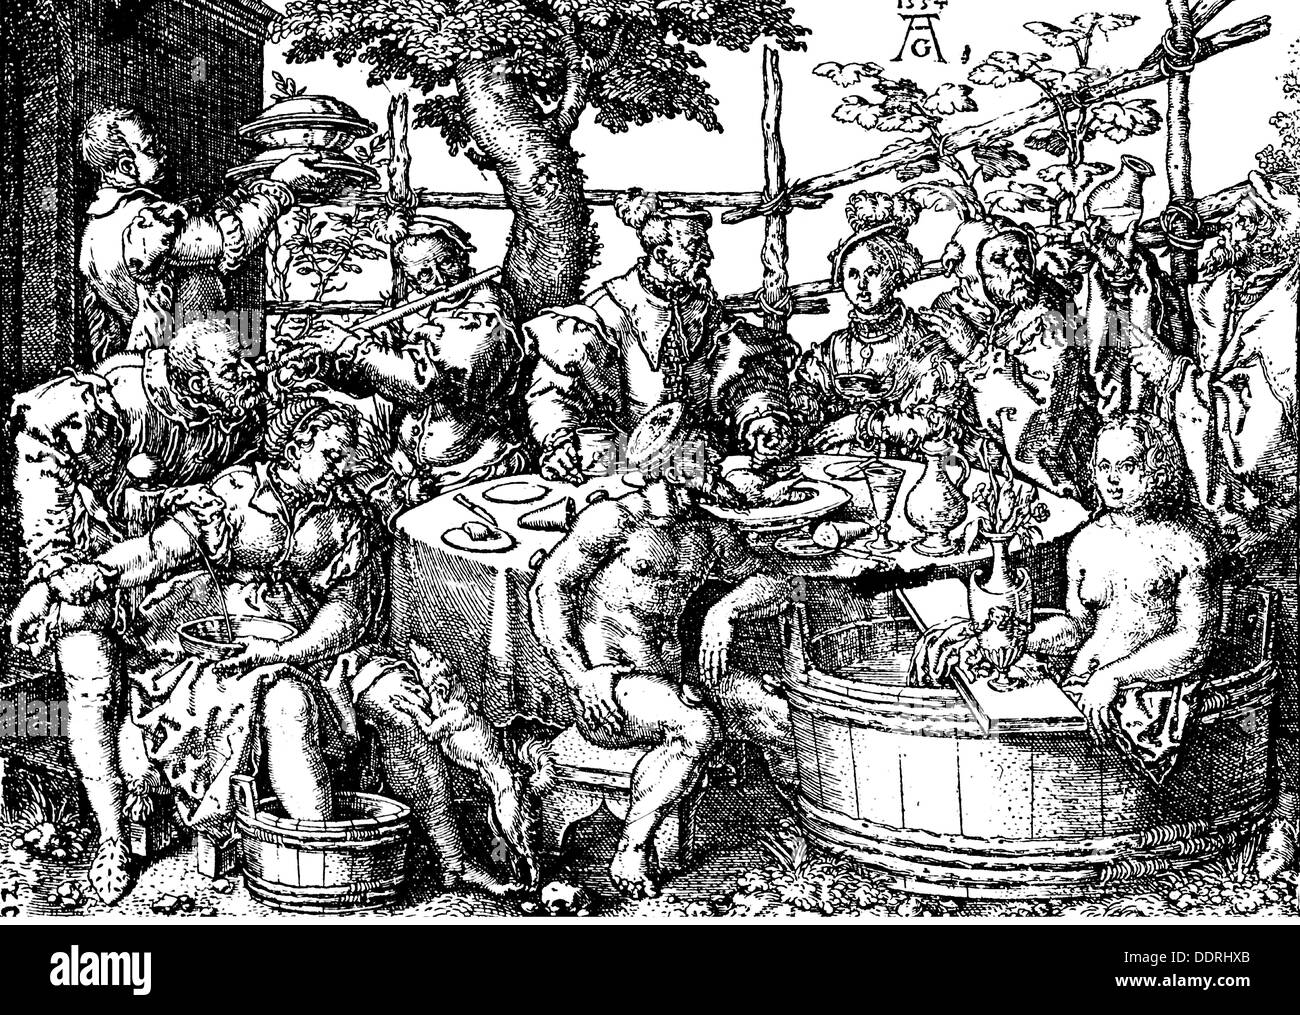 La médecine, le traitement, la saignée / venesection, bloodleeting, transpiration, saigner et le bain, gravure sur cuivre de Heinrich Aldegrever (1502 - 1555 / 1561), à partir de : '6' non res naturales, 1554, l'artiste n'a pas d'auteur pour être effacé Banque D'Images